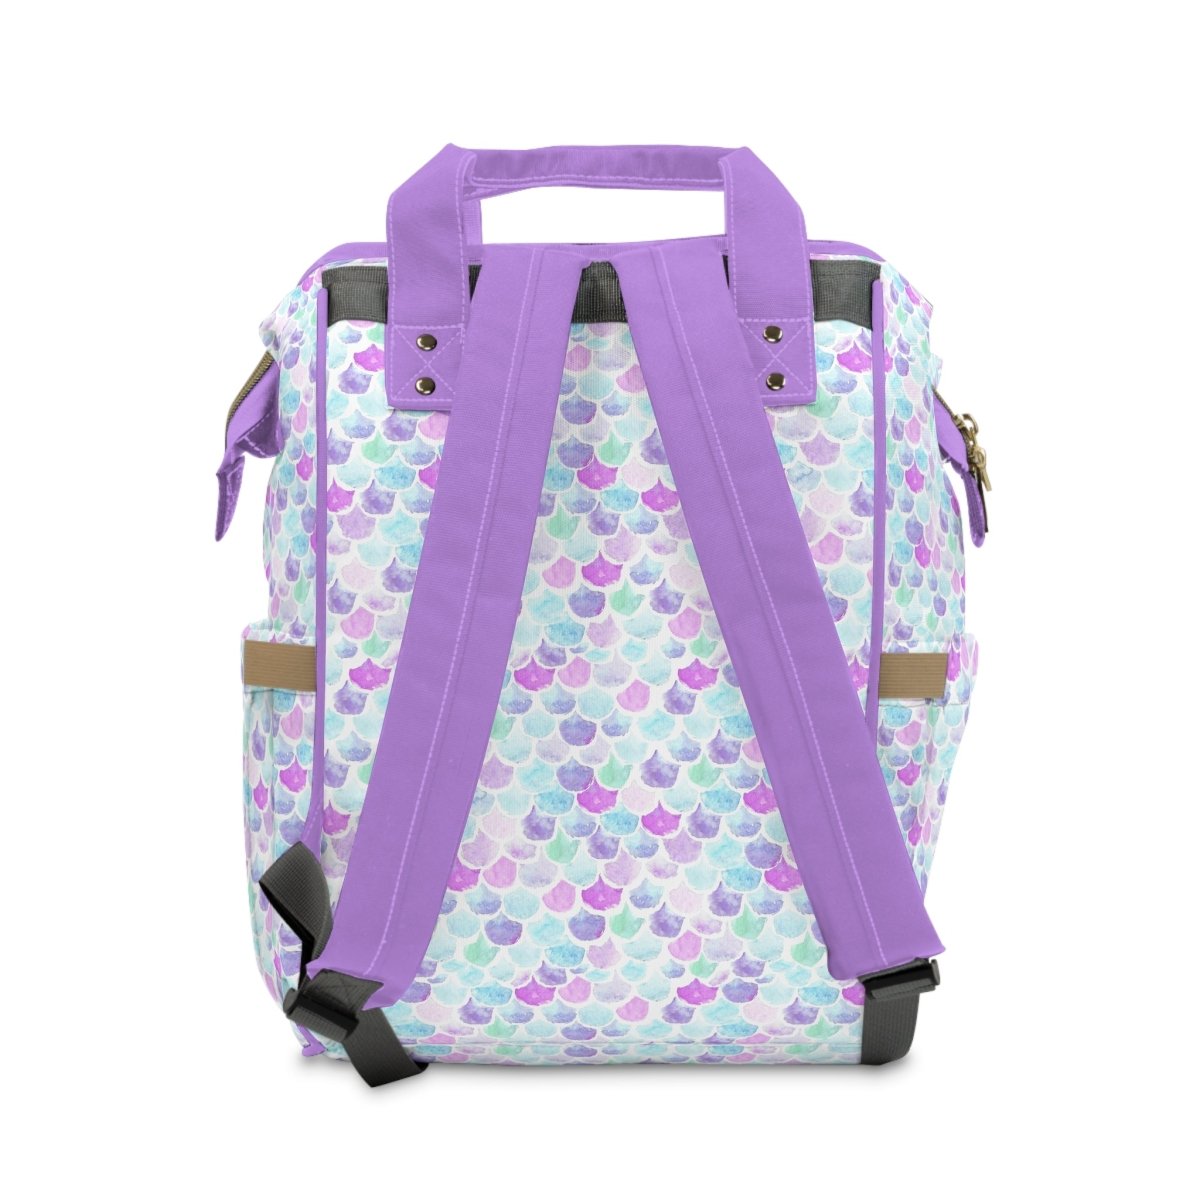 Jewel Mermaids Scales Personalized Backpack Diaper Bag - Diaper Bag